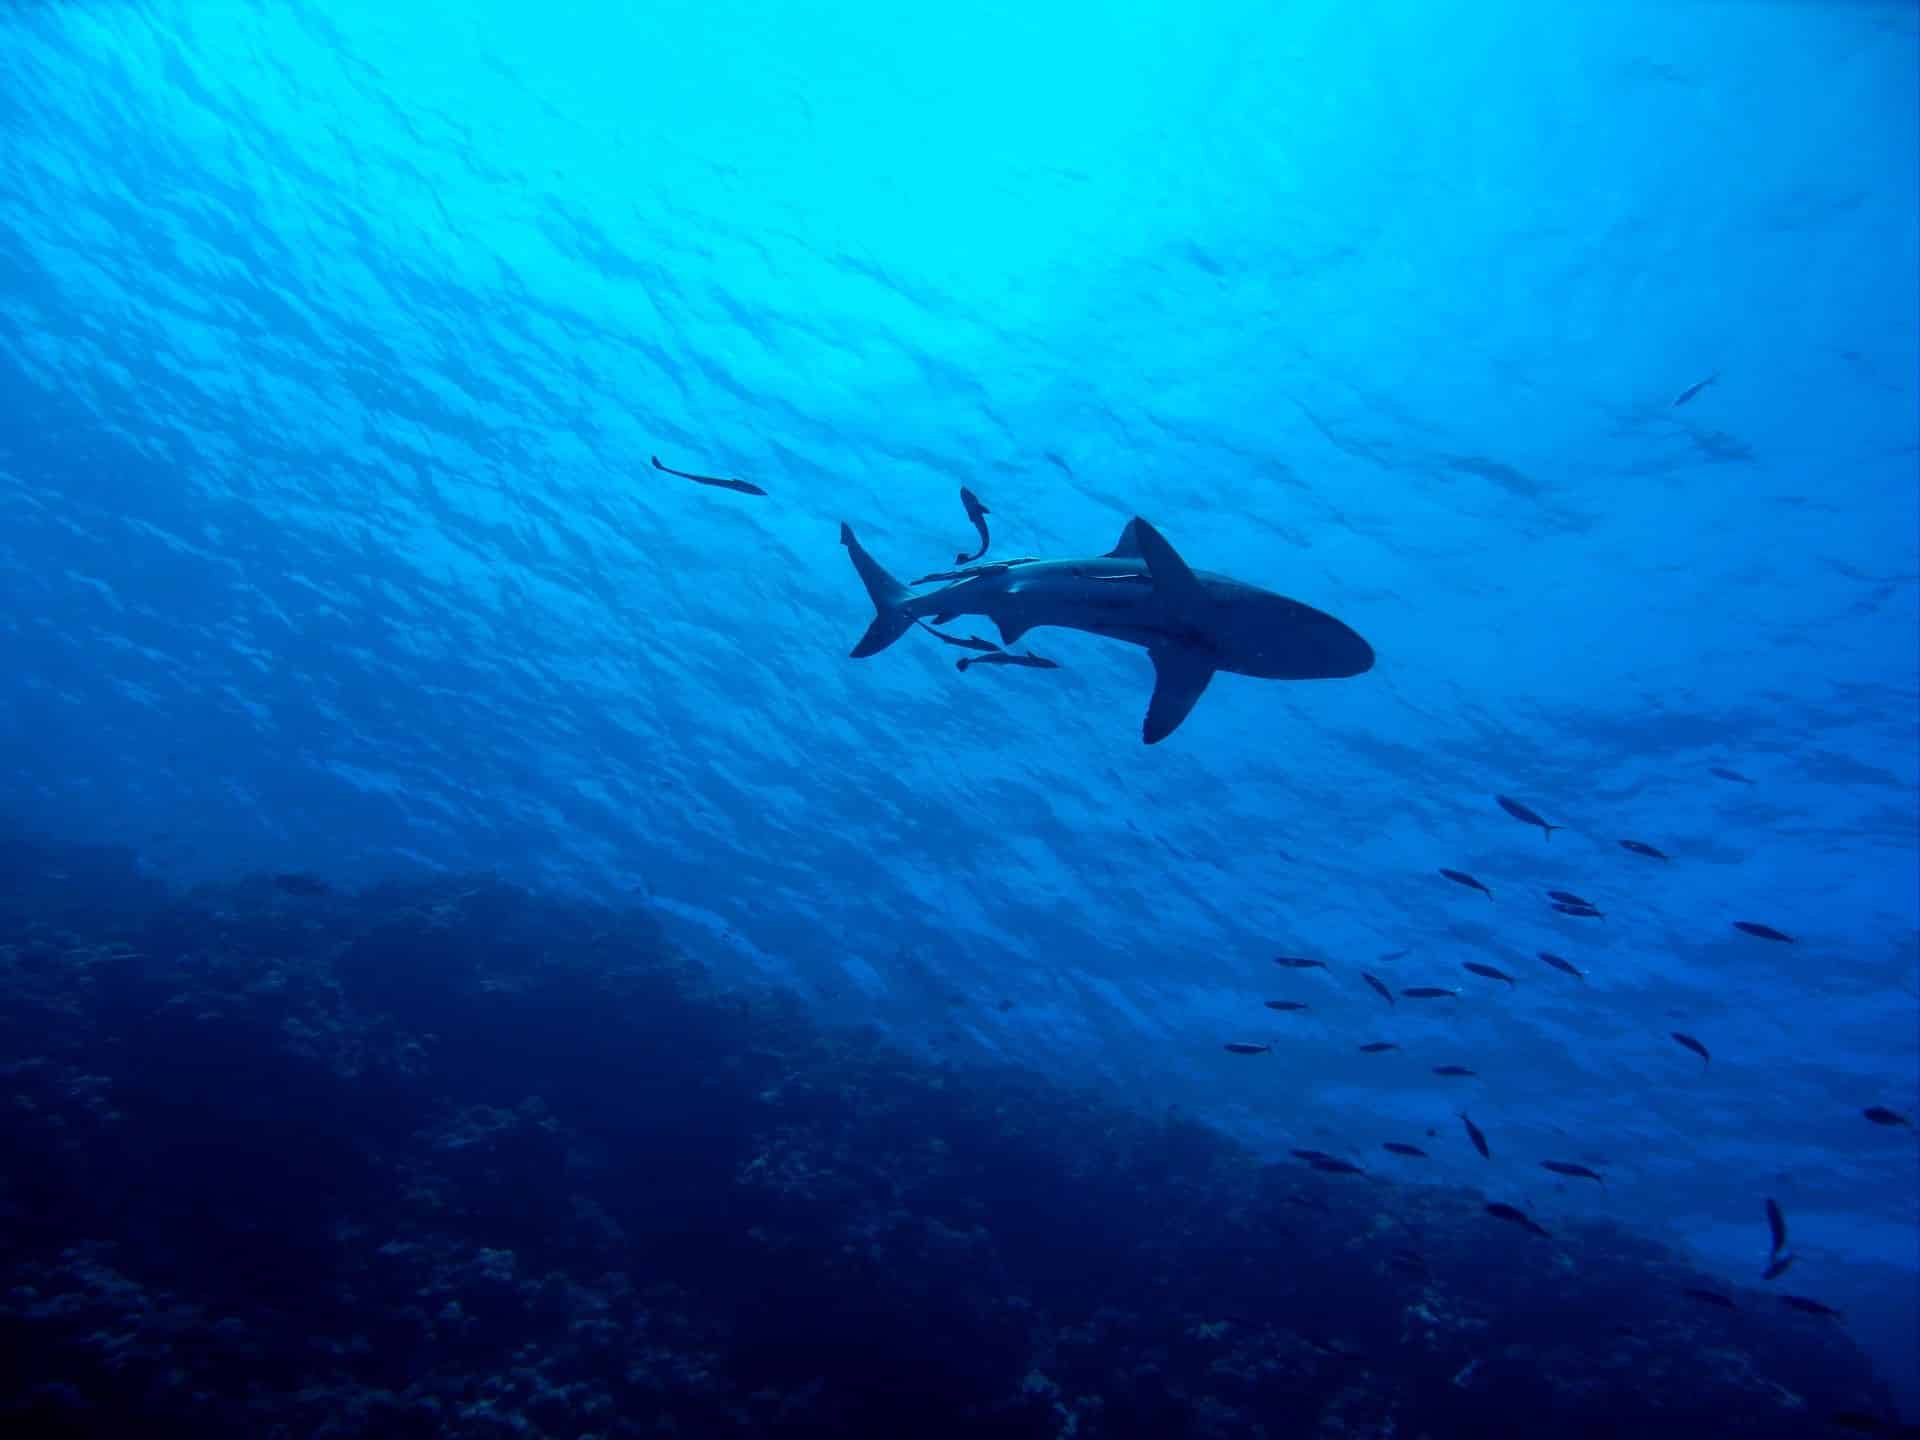 Hai-Arten im Mittelmeer – gefährlich für Urlauber beim Schwimmen?